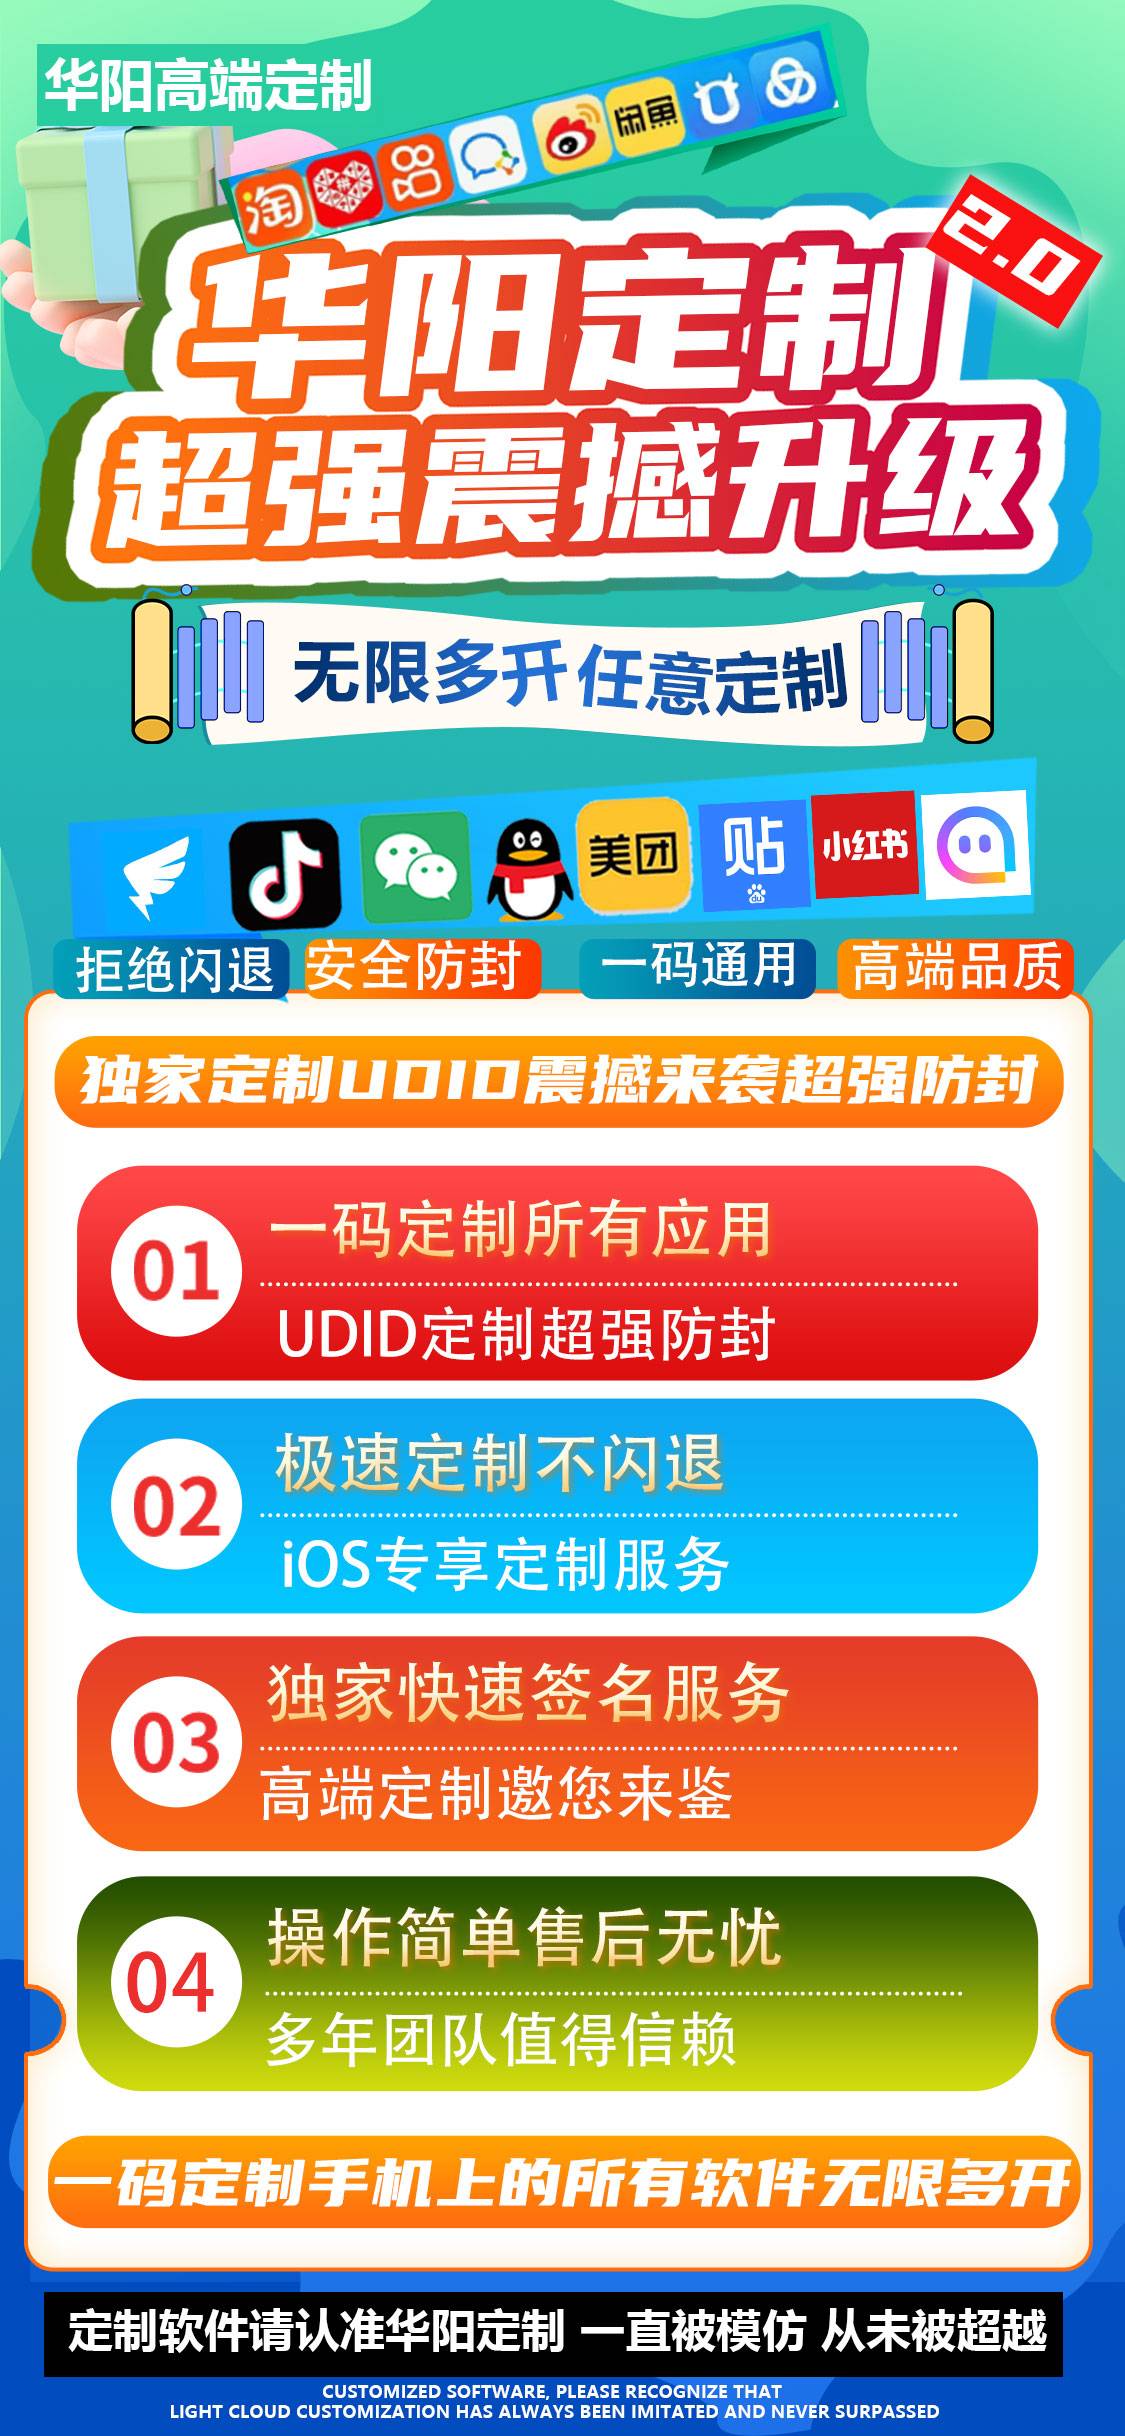 苹果华阳定制-UDID定制-定制多开-苹果定制-售后180天/40天